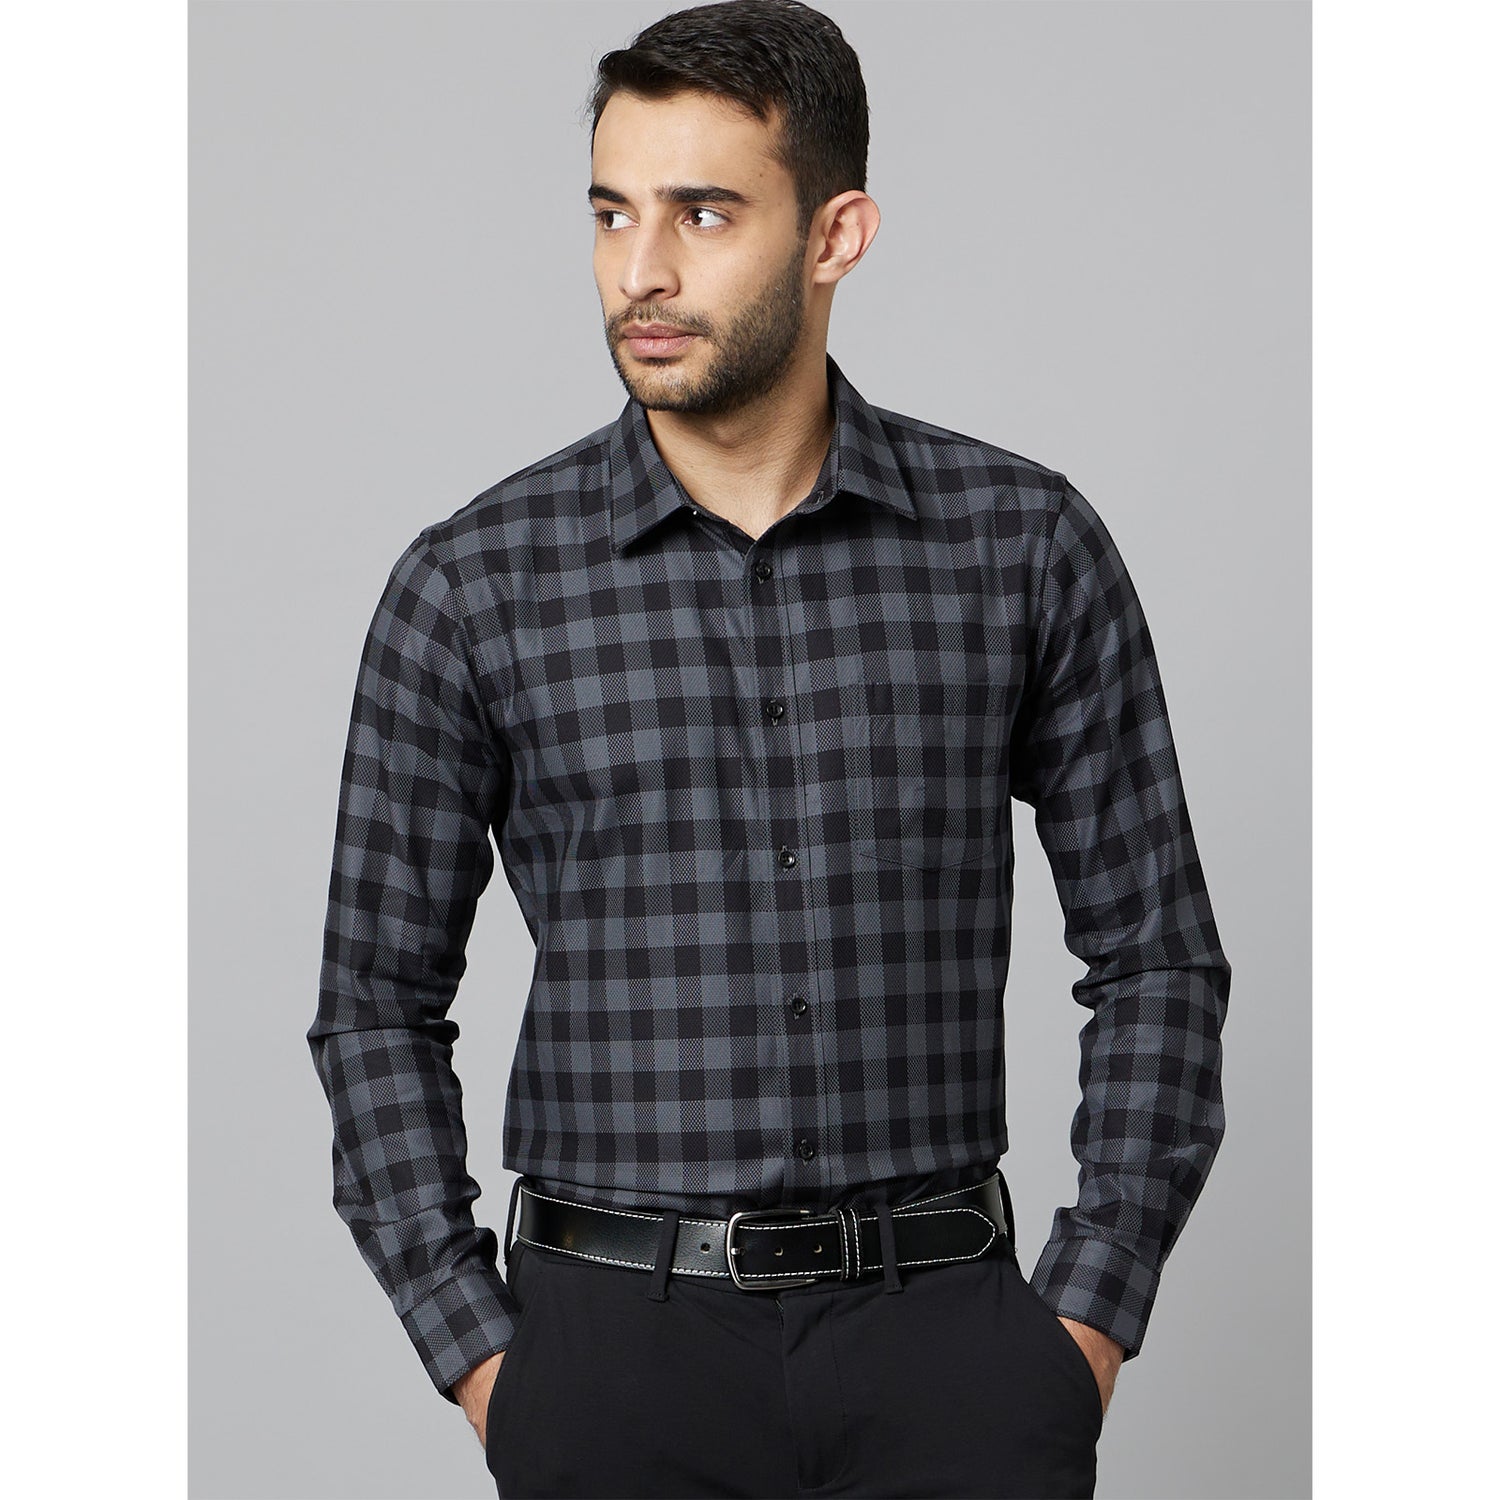 Black Checks Premium Shirt (DAPRECHX)